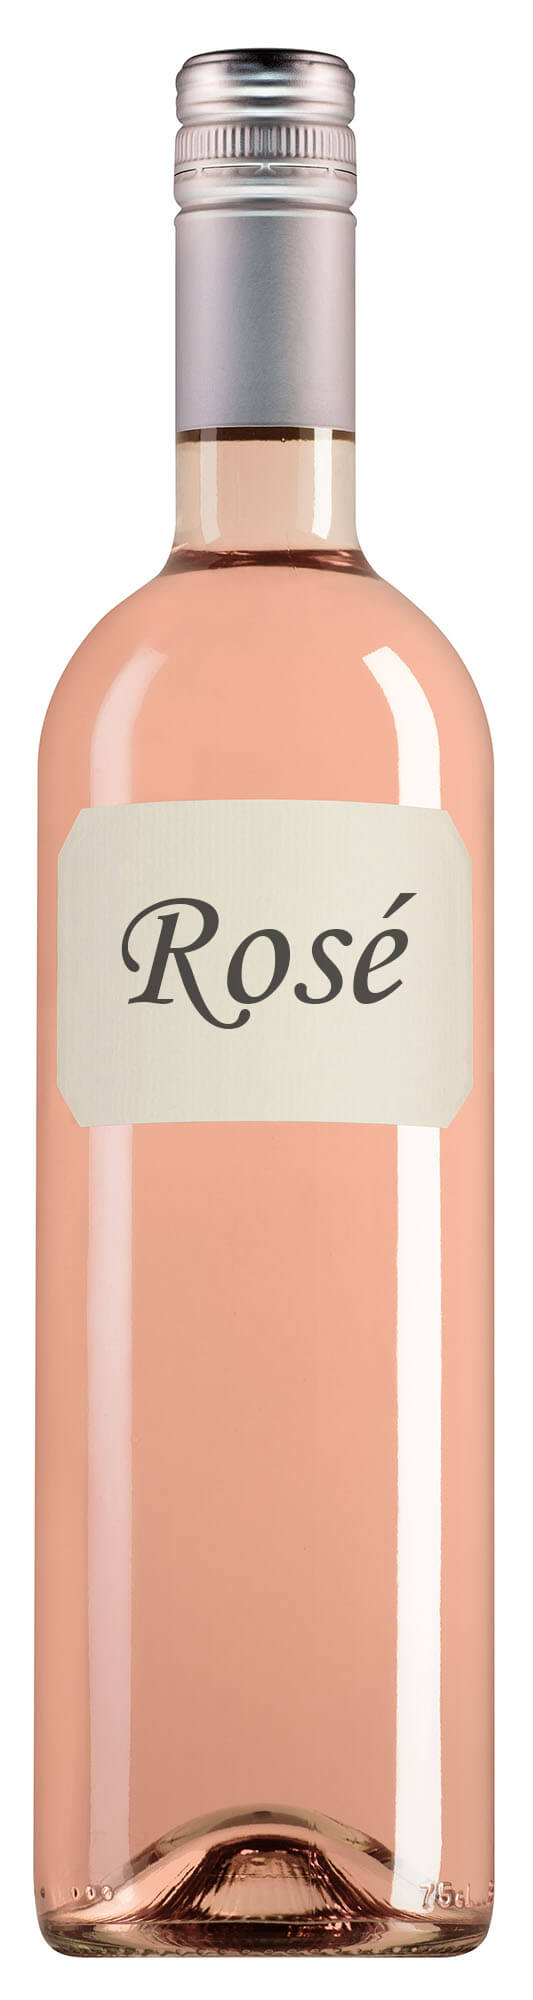 Royer Champagne Brut Rosé